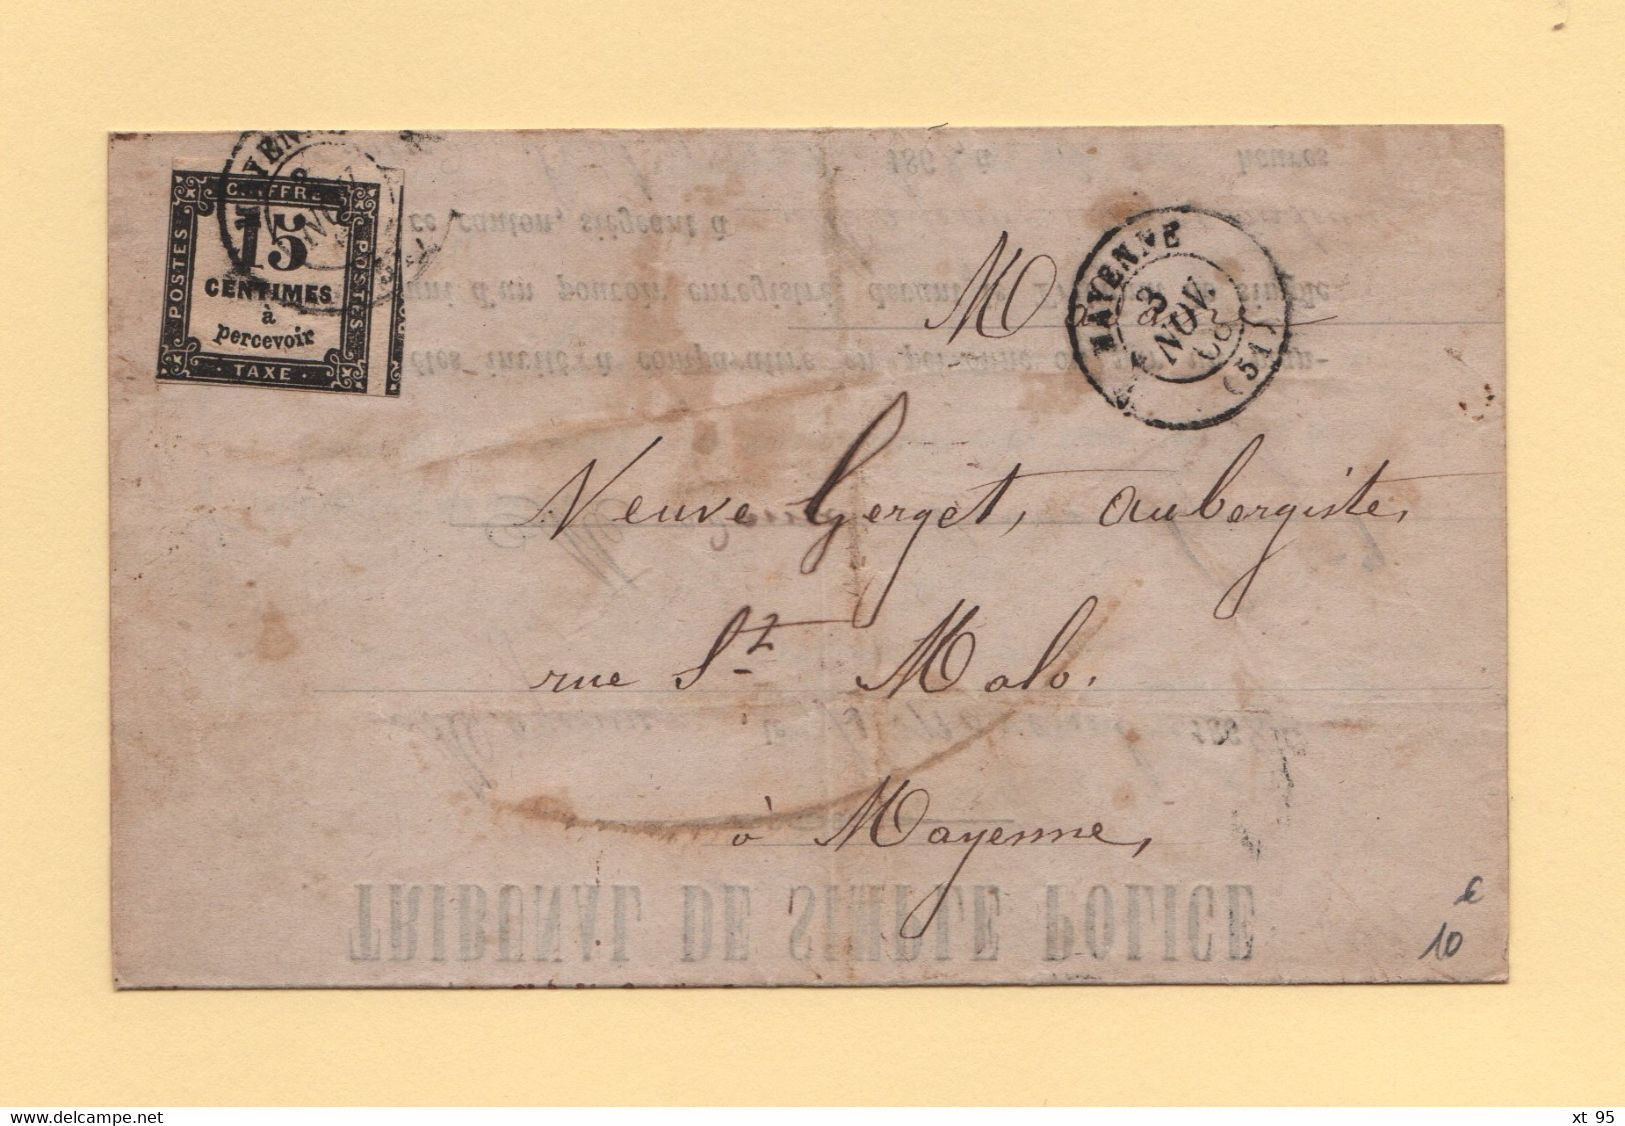 Mayenne - 51 - 3 Nov 1868 - Tribunal De Police - Defaut D Eclairage D Une Voiture - Timbre Taxe - 1859-1959 Brieven & Documenten